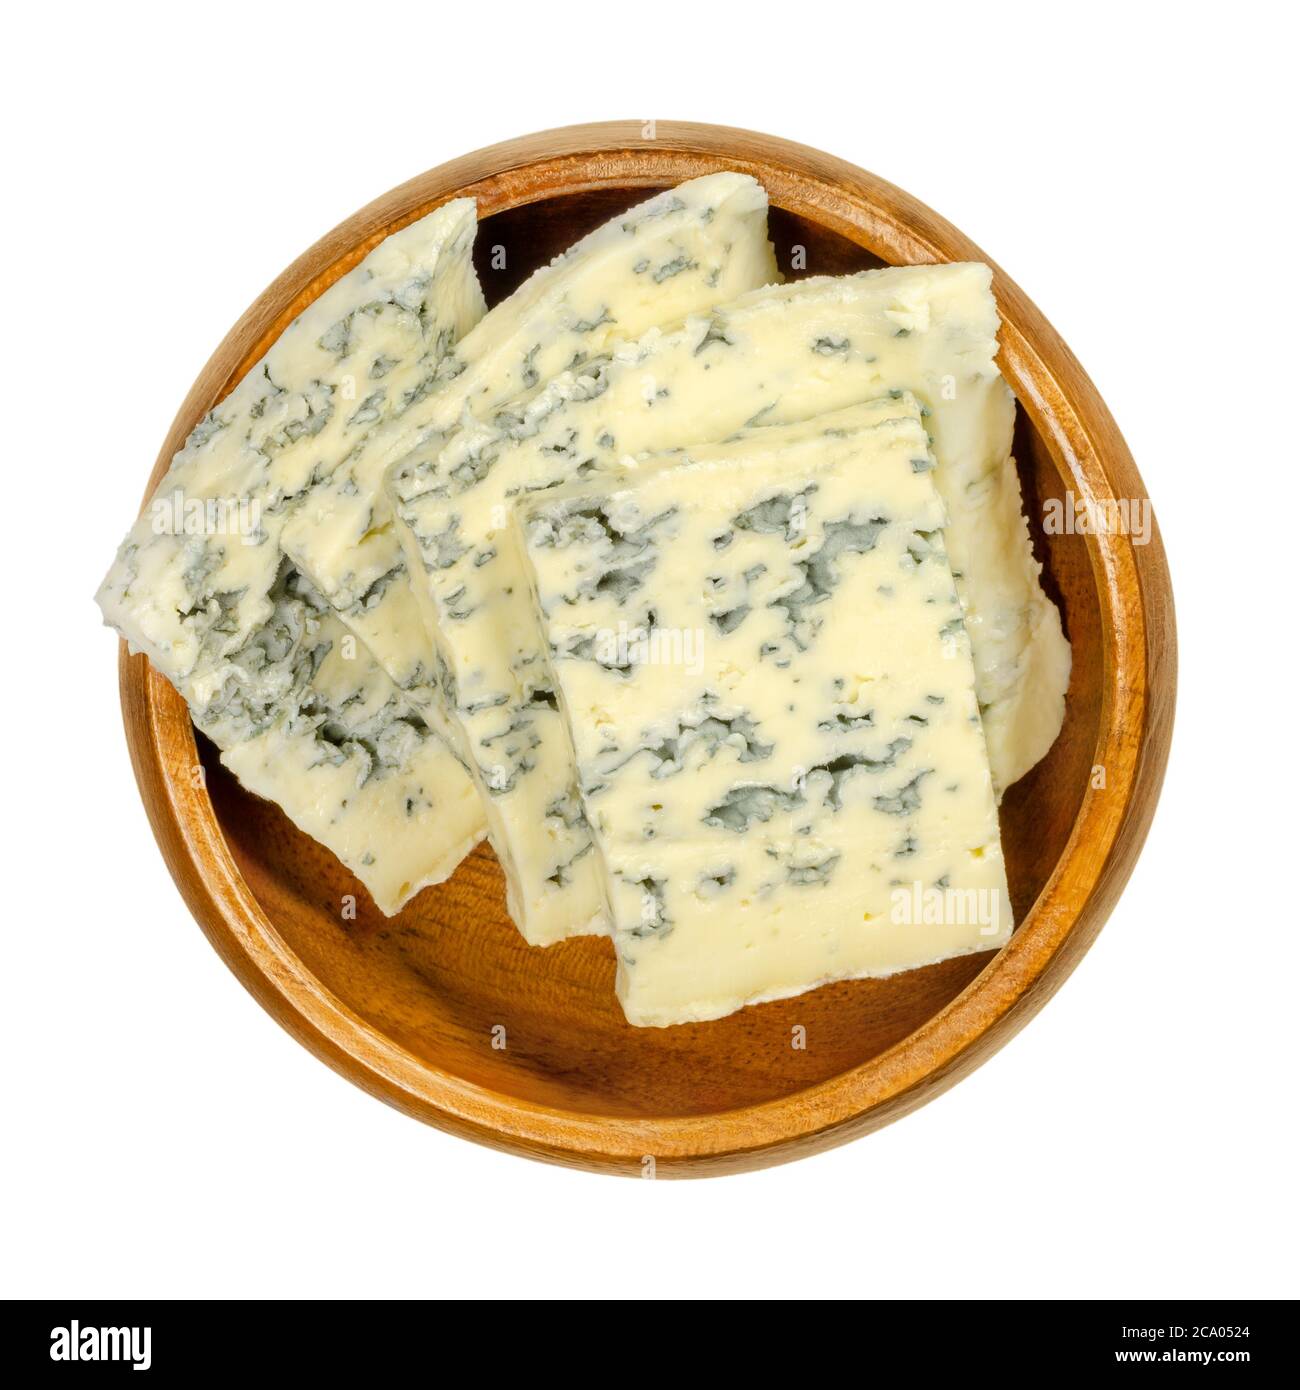 Tranches de fromage bleu dans un bol en bois. Fromage bleu fait avec des cultures de moule Penicillium, lui donnant des taches ou des veines, qui peuvent varier en couleur. Banque D'Images